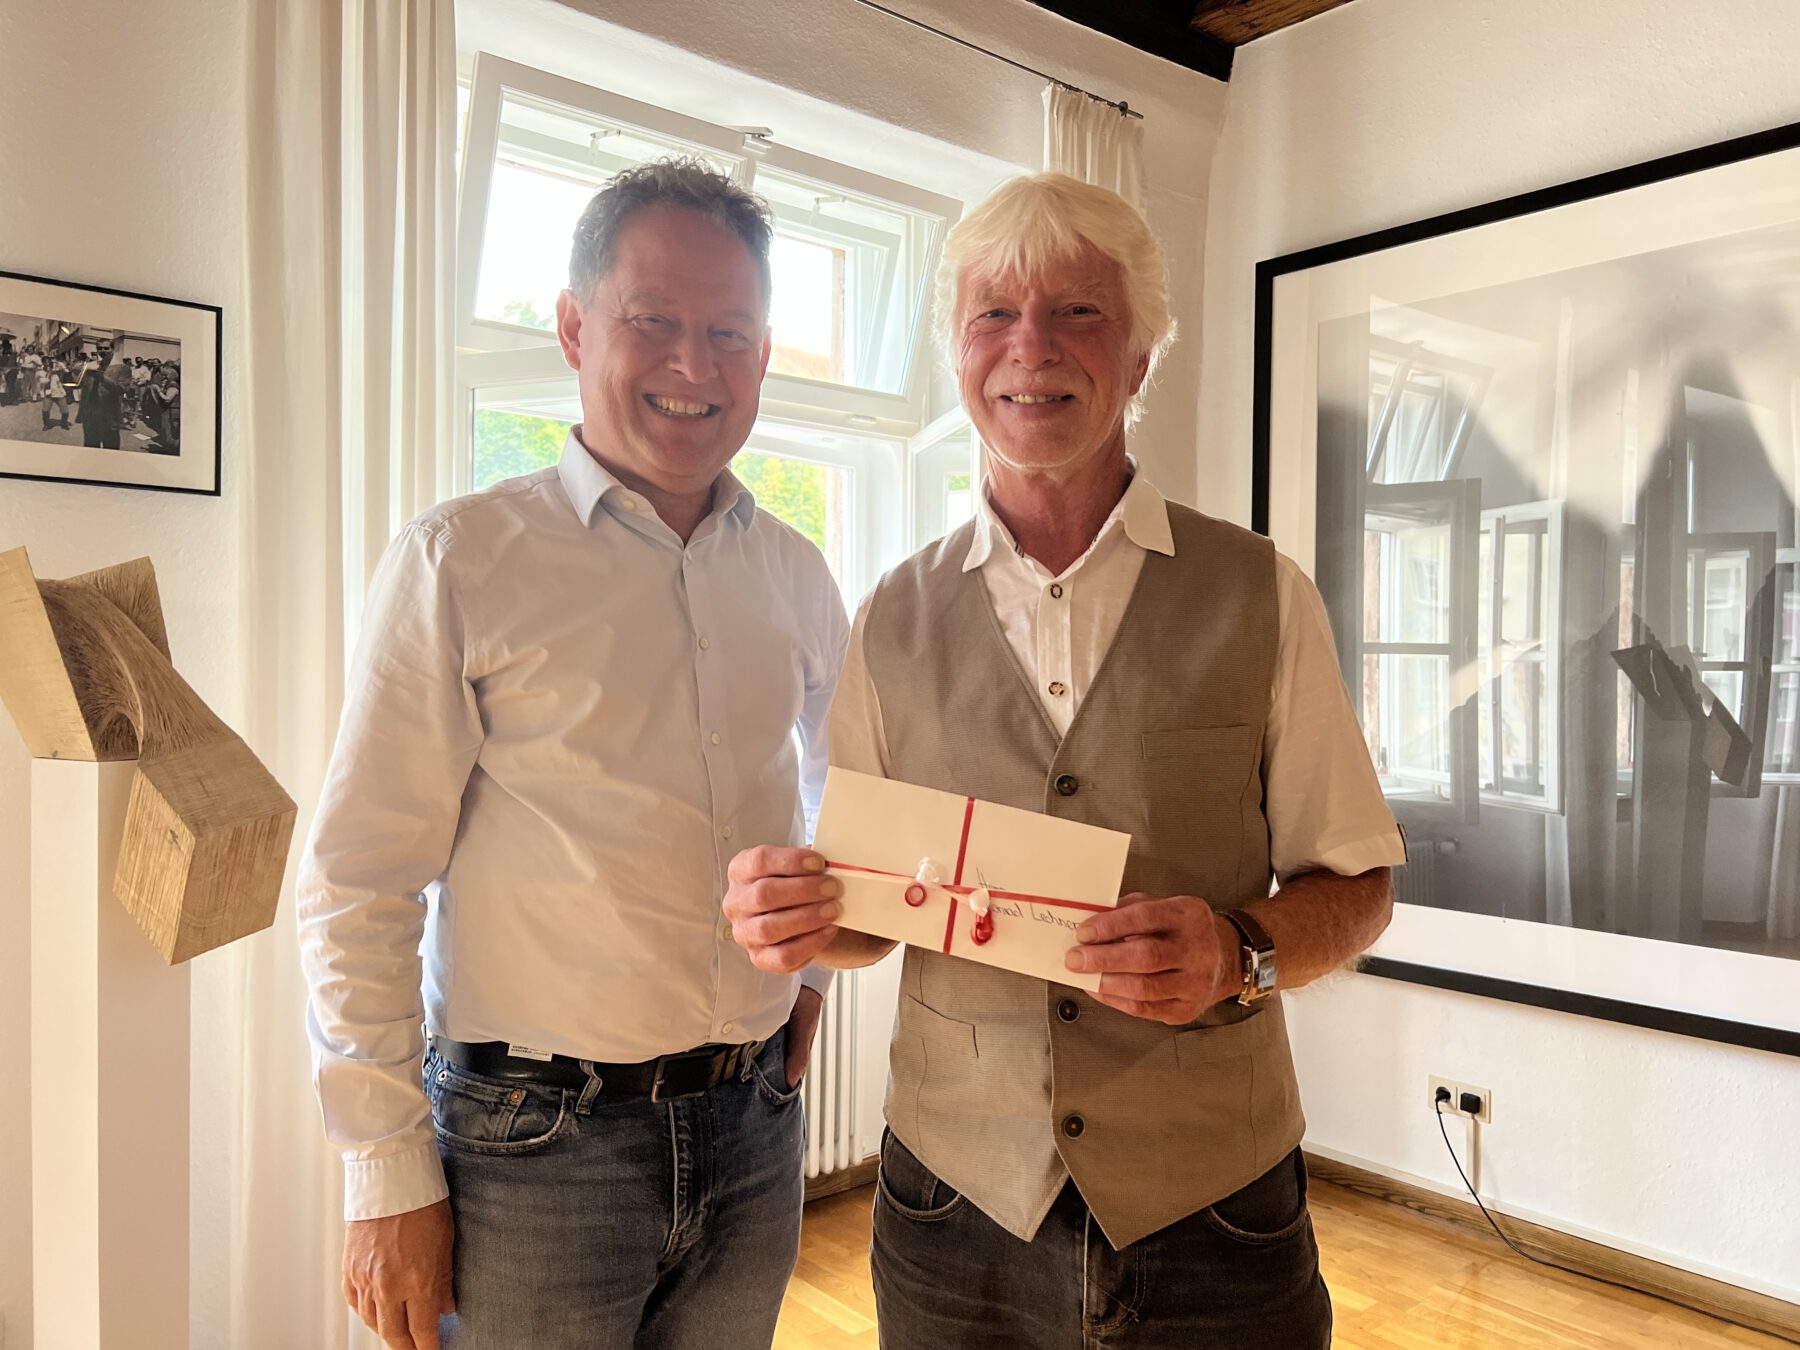 Erster Bürgermeister Florian Schneider dankt Konrad Lechner für seine treuen Dienstjahre, in denen er fachkundige und sehr gute Arbeit geleistet hat. © Stadt Burghausen/köx